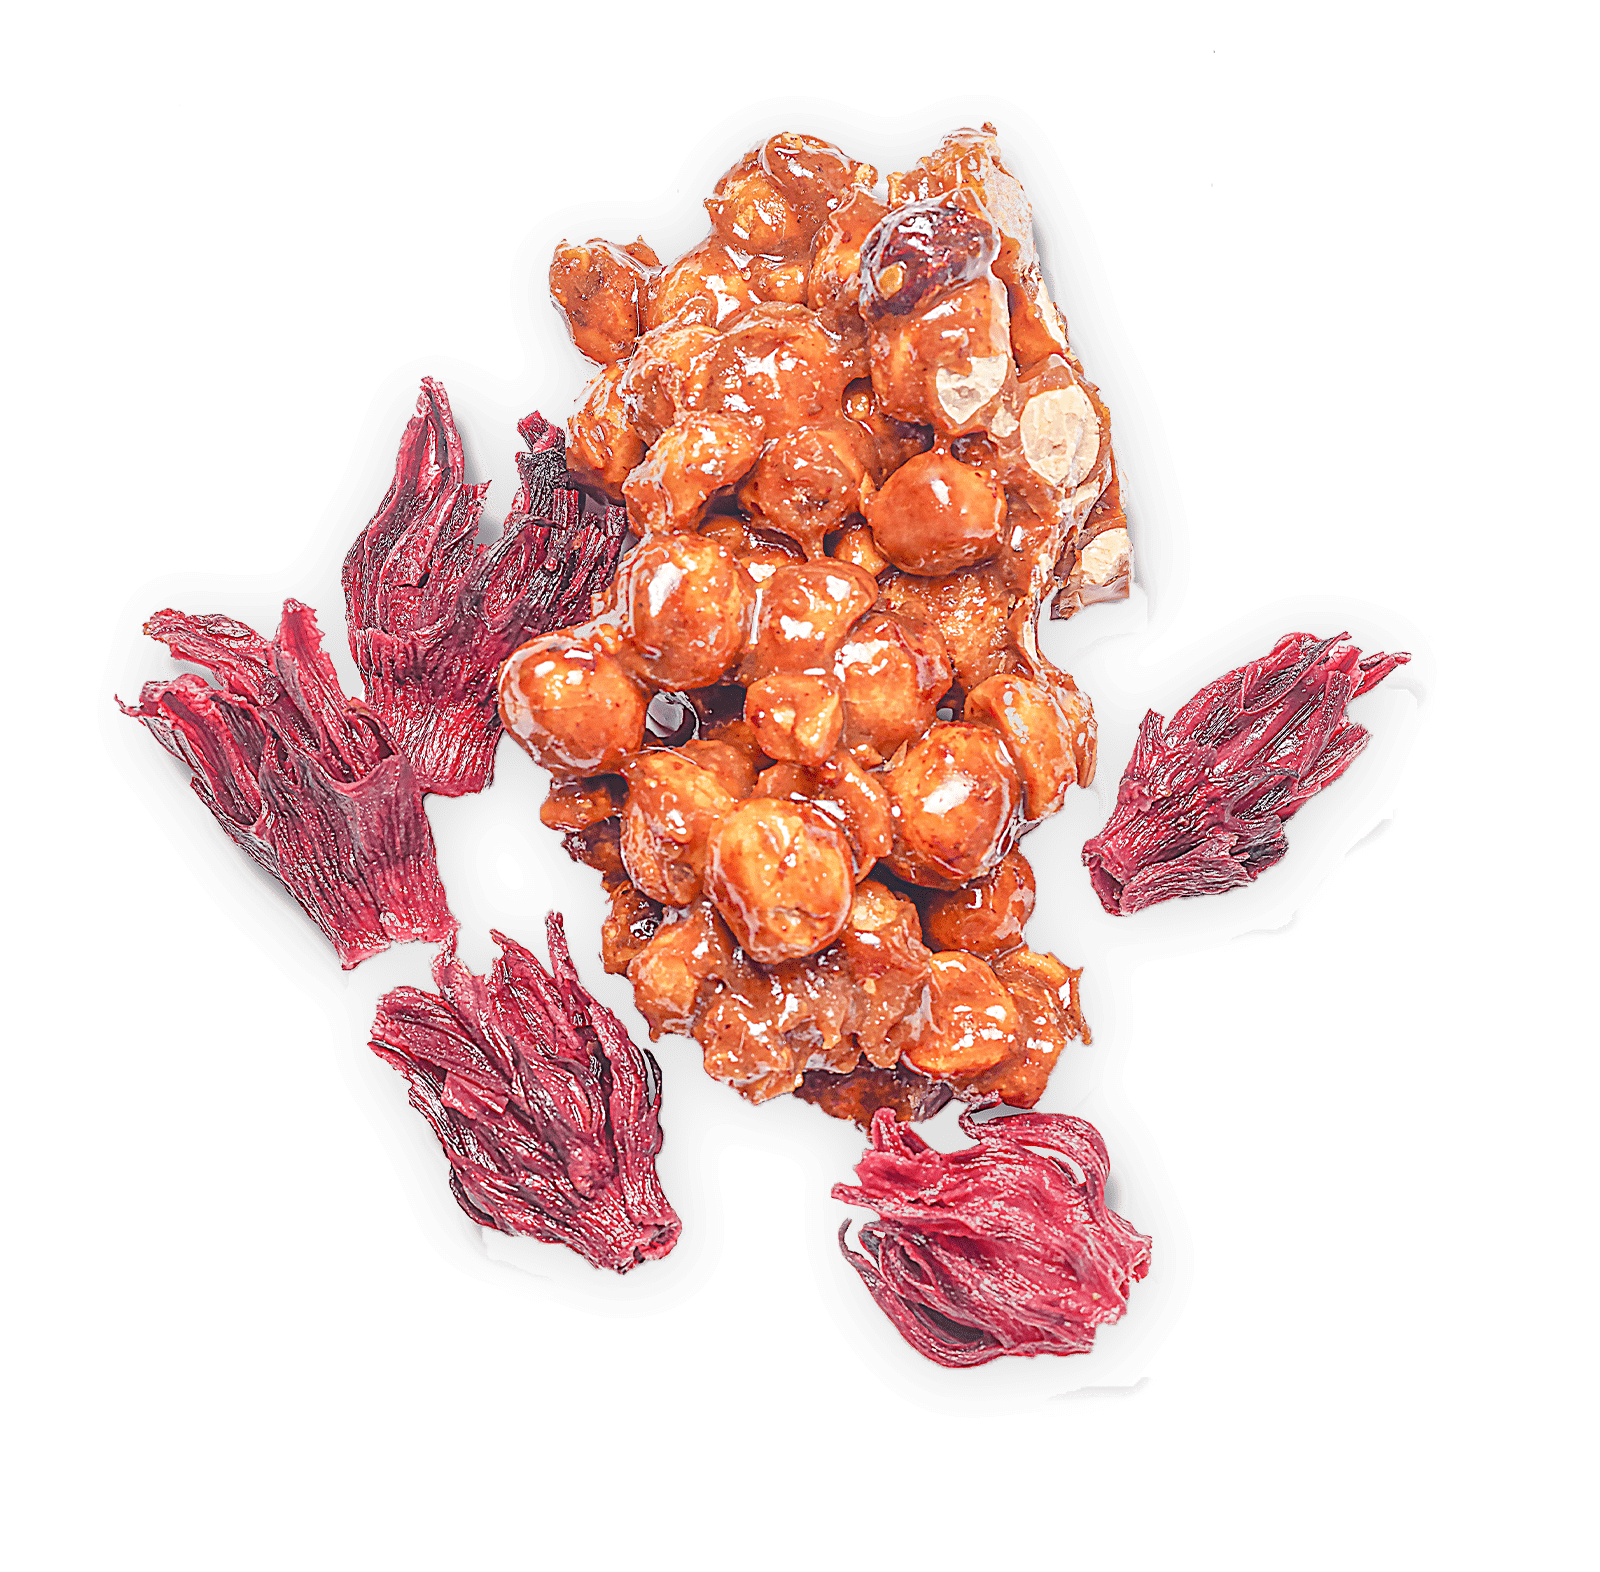 Hazelnut praline, hibiscus gelato